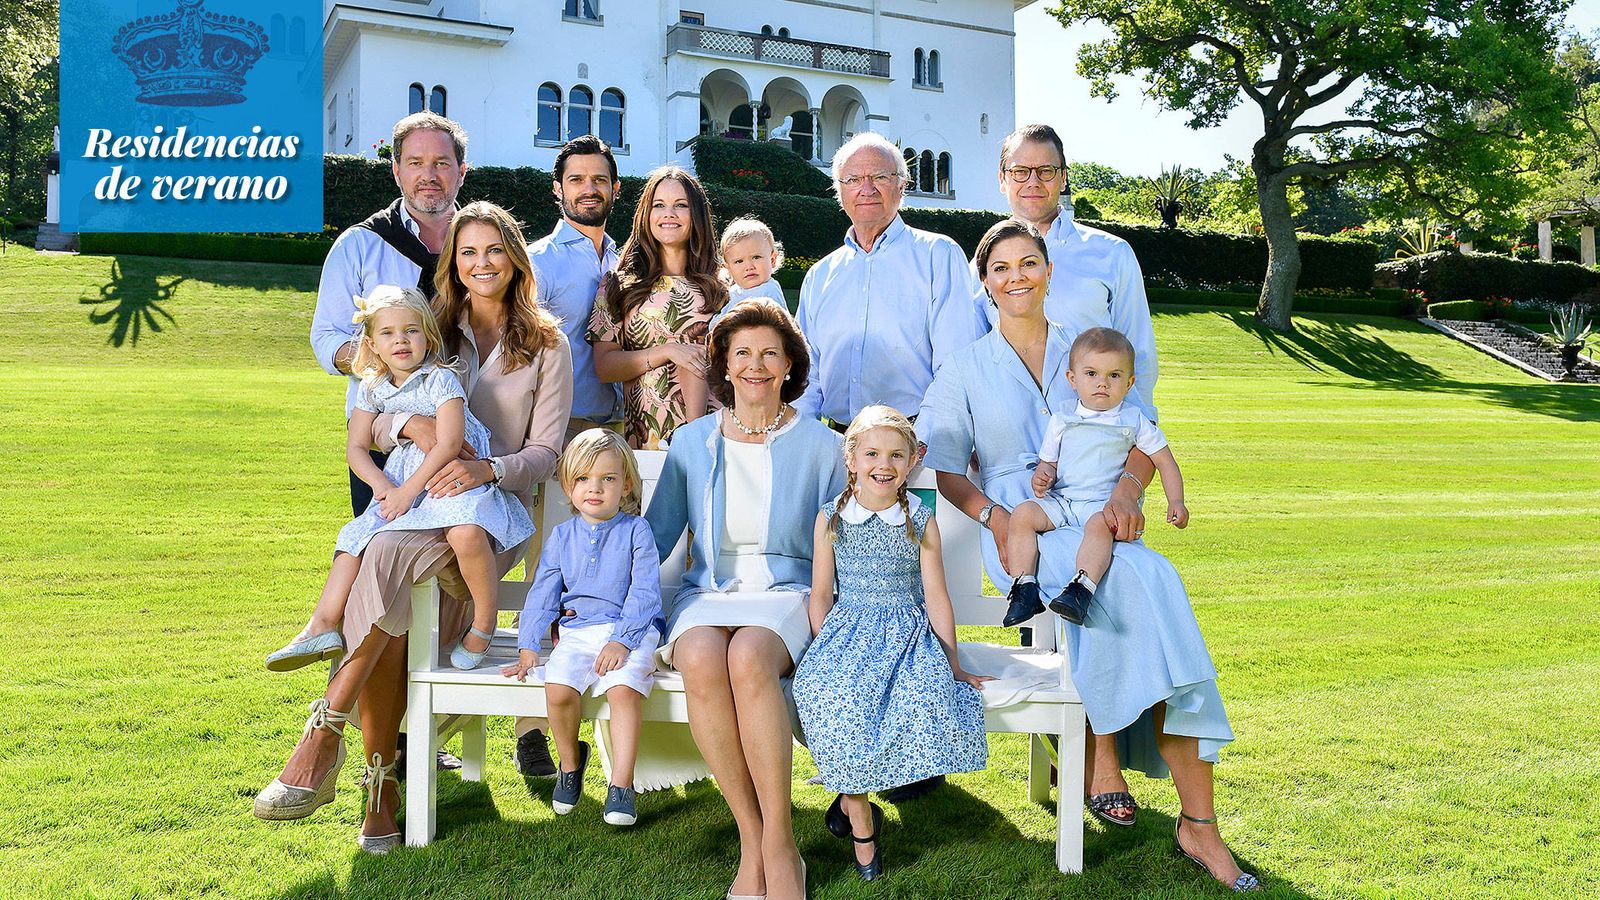 Foto: La familia real sueca al completo, en los jardines del castillo de Solliden. (Öland)